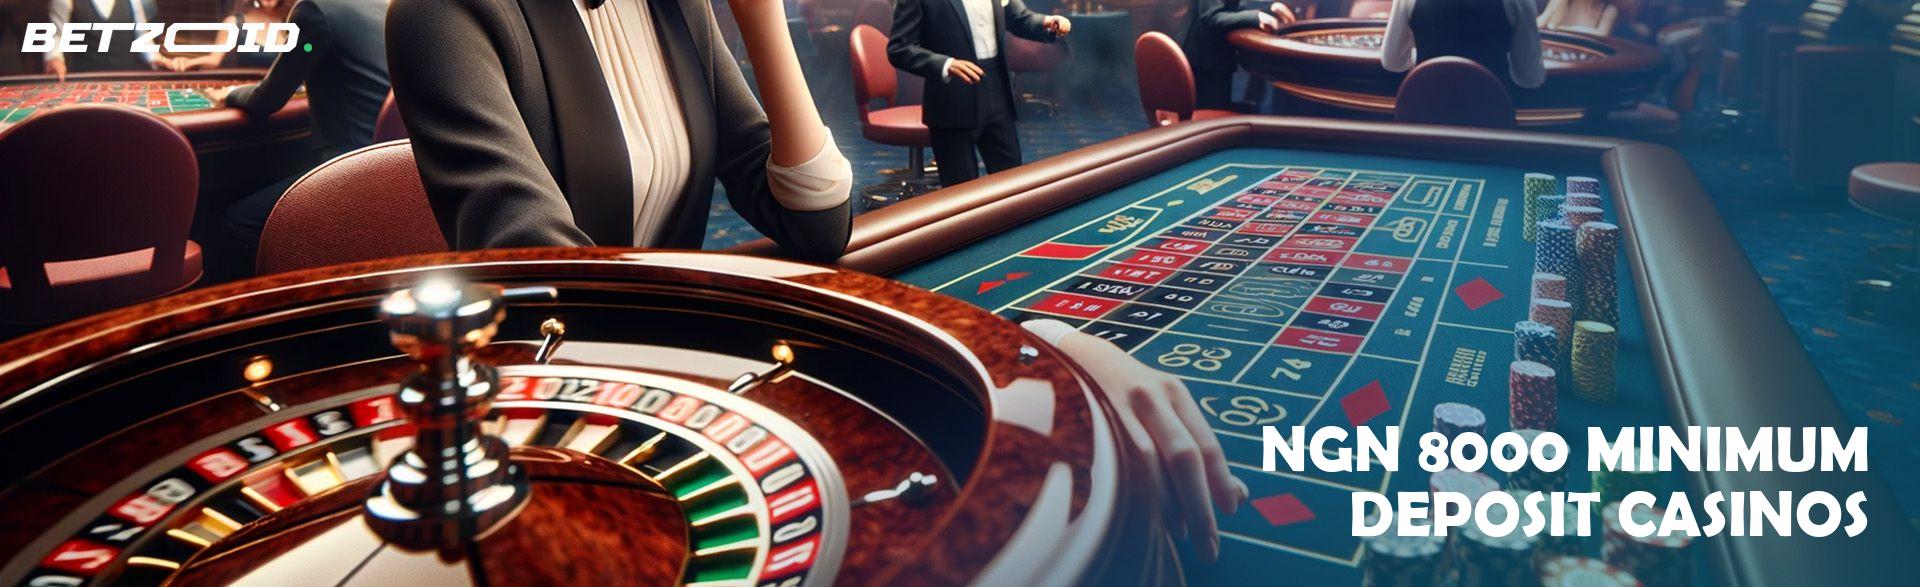 ₦8000 Minimum Deposit Casinos.